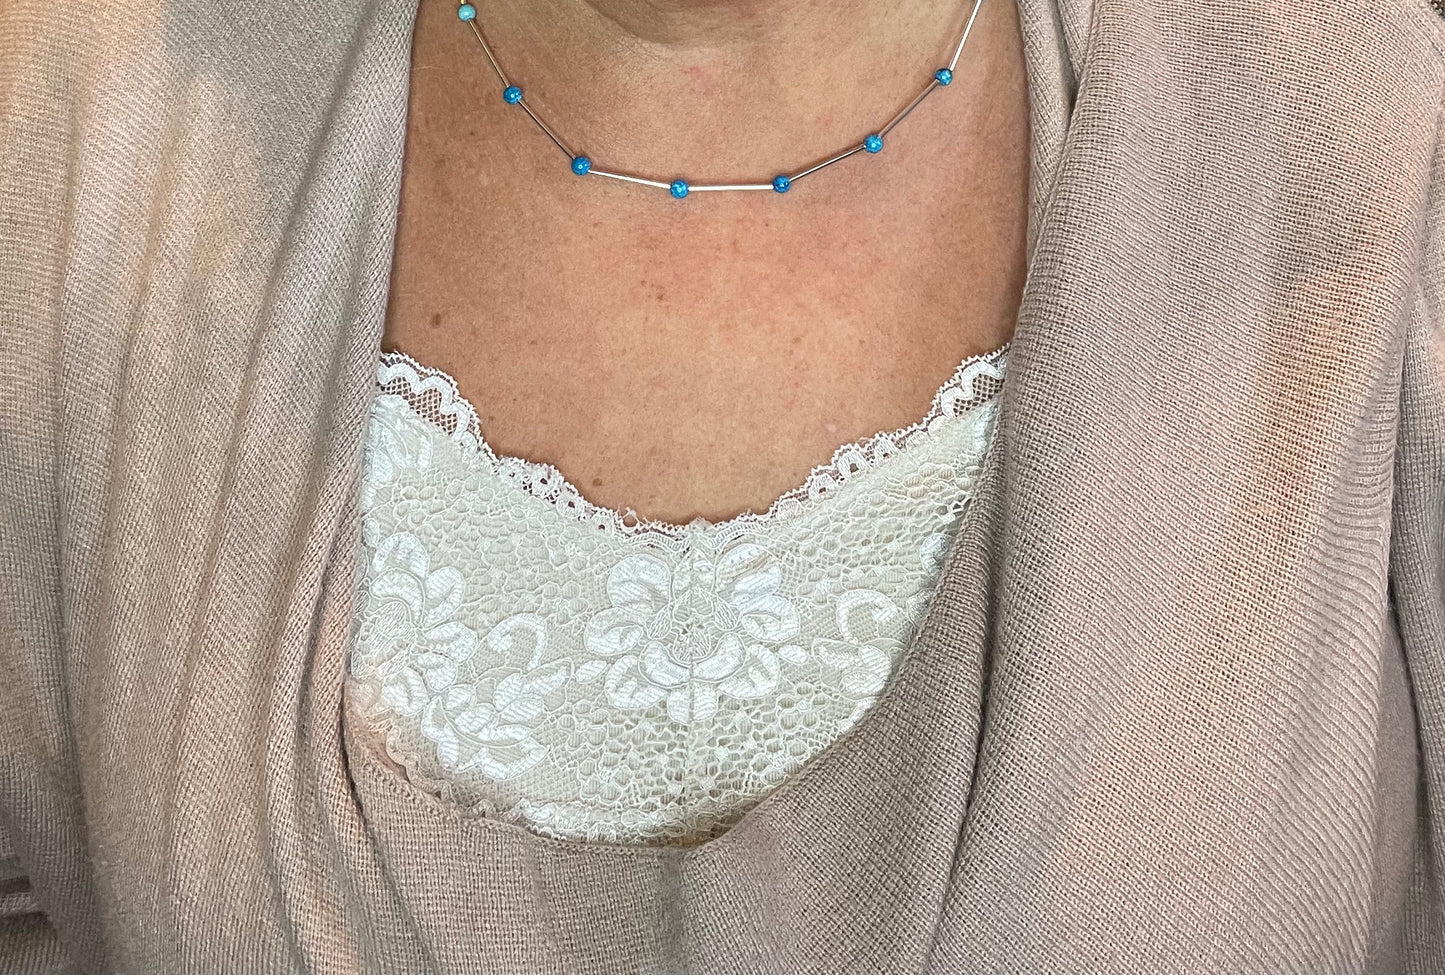 Wire & turquoise bead bracelet